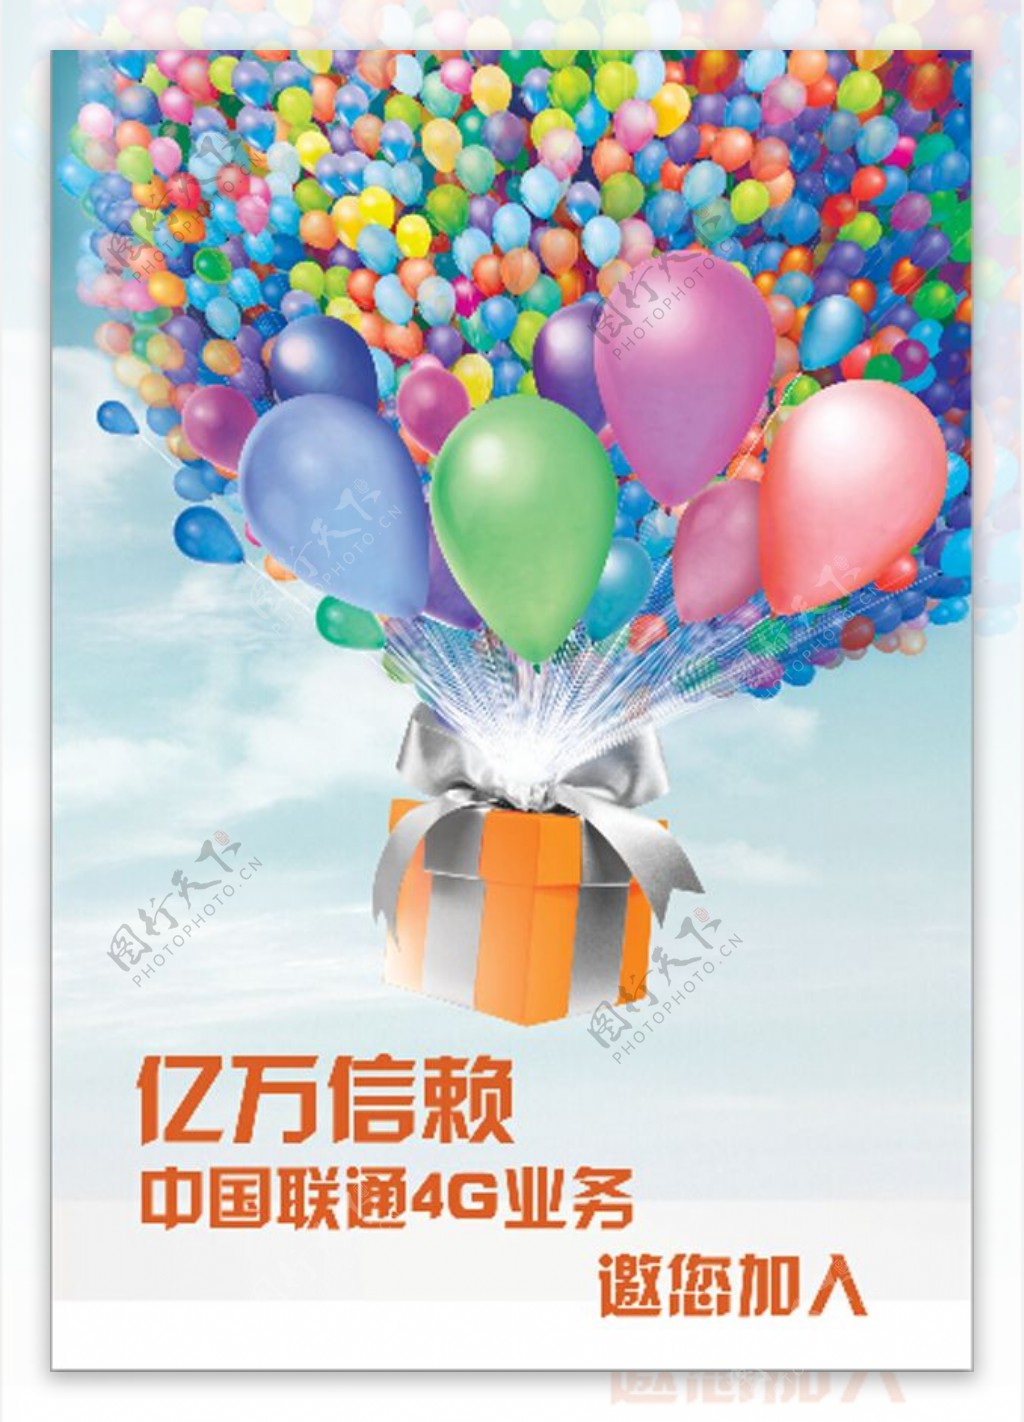 中国联通4G业务宣传海报